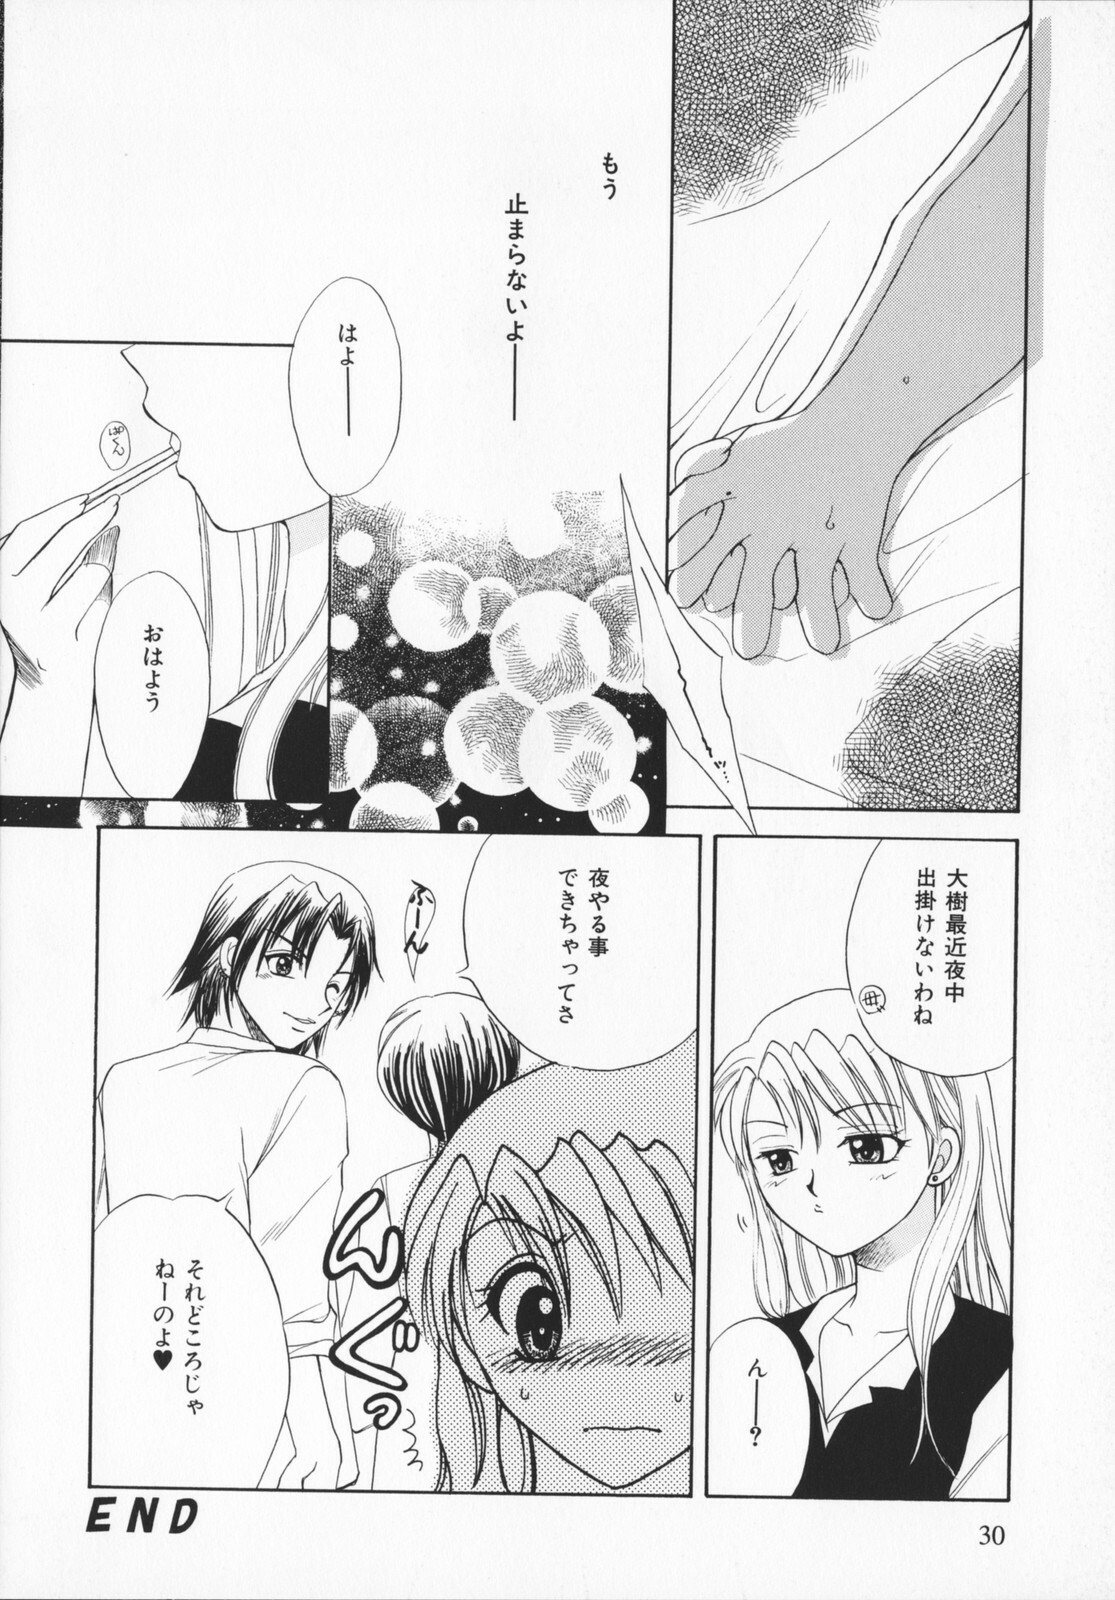 [Ureshino Megumi]Genkaiharetsu (LIMIT EXPLOSION) page 29 full